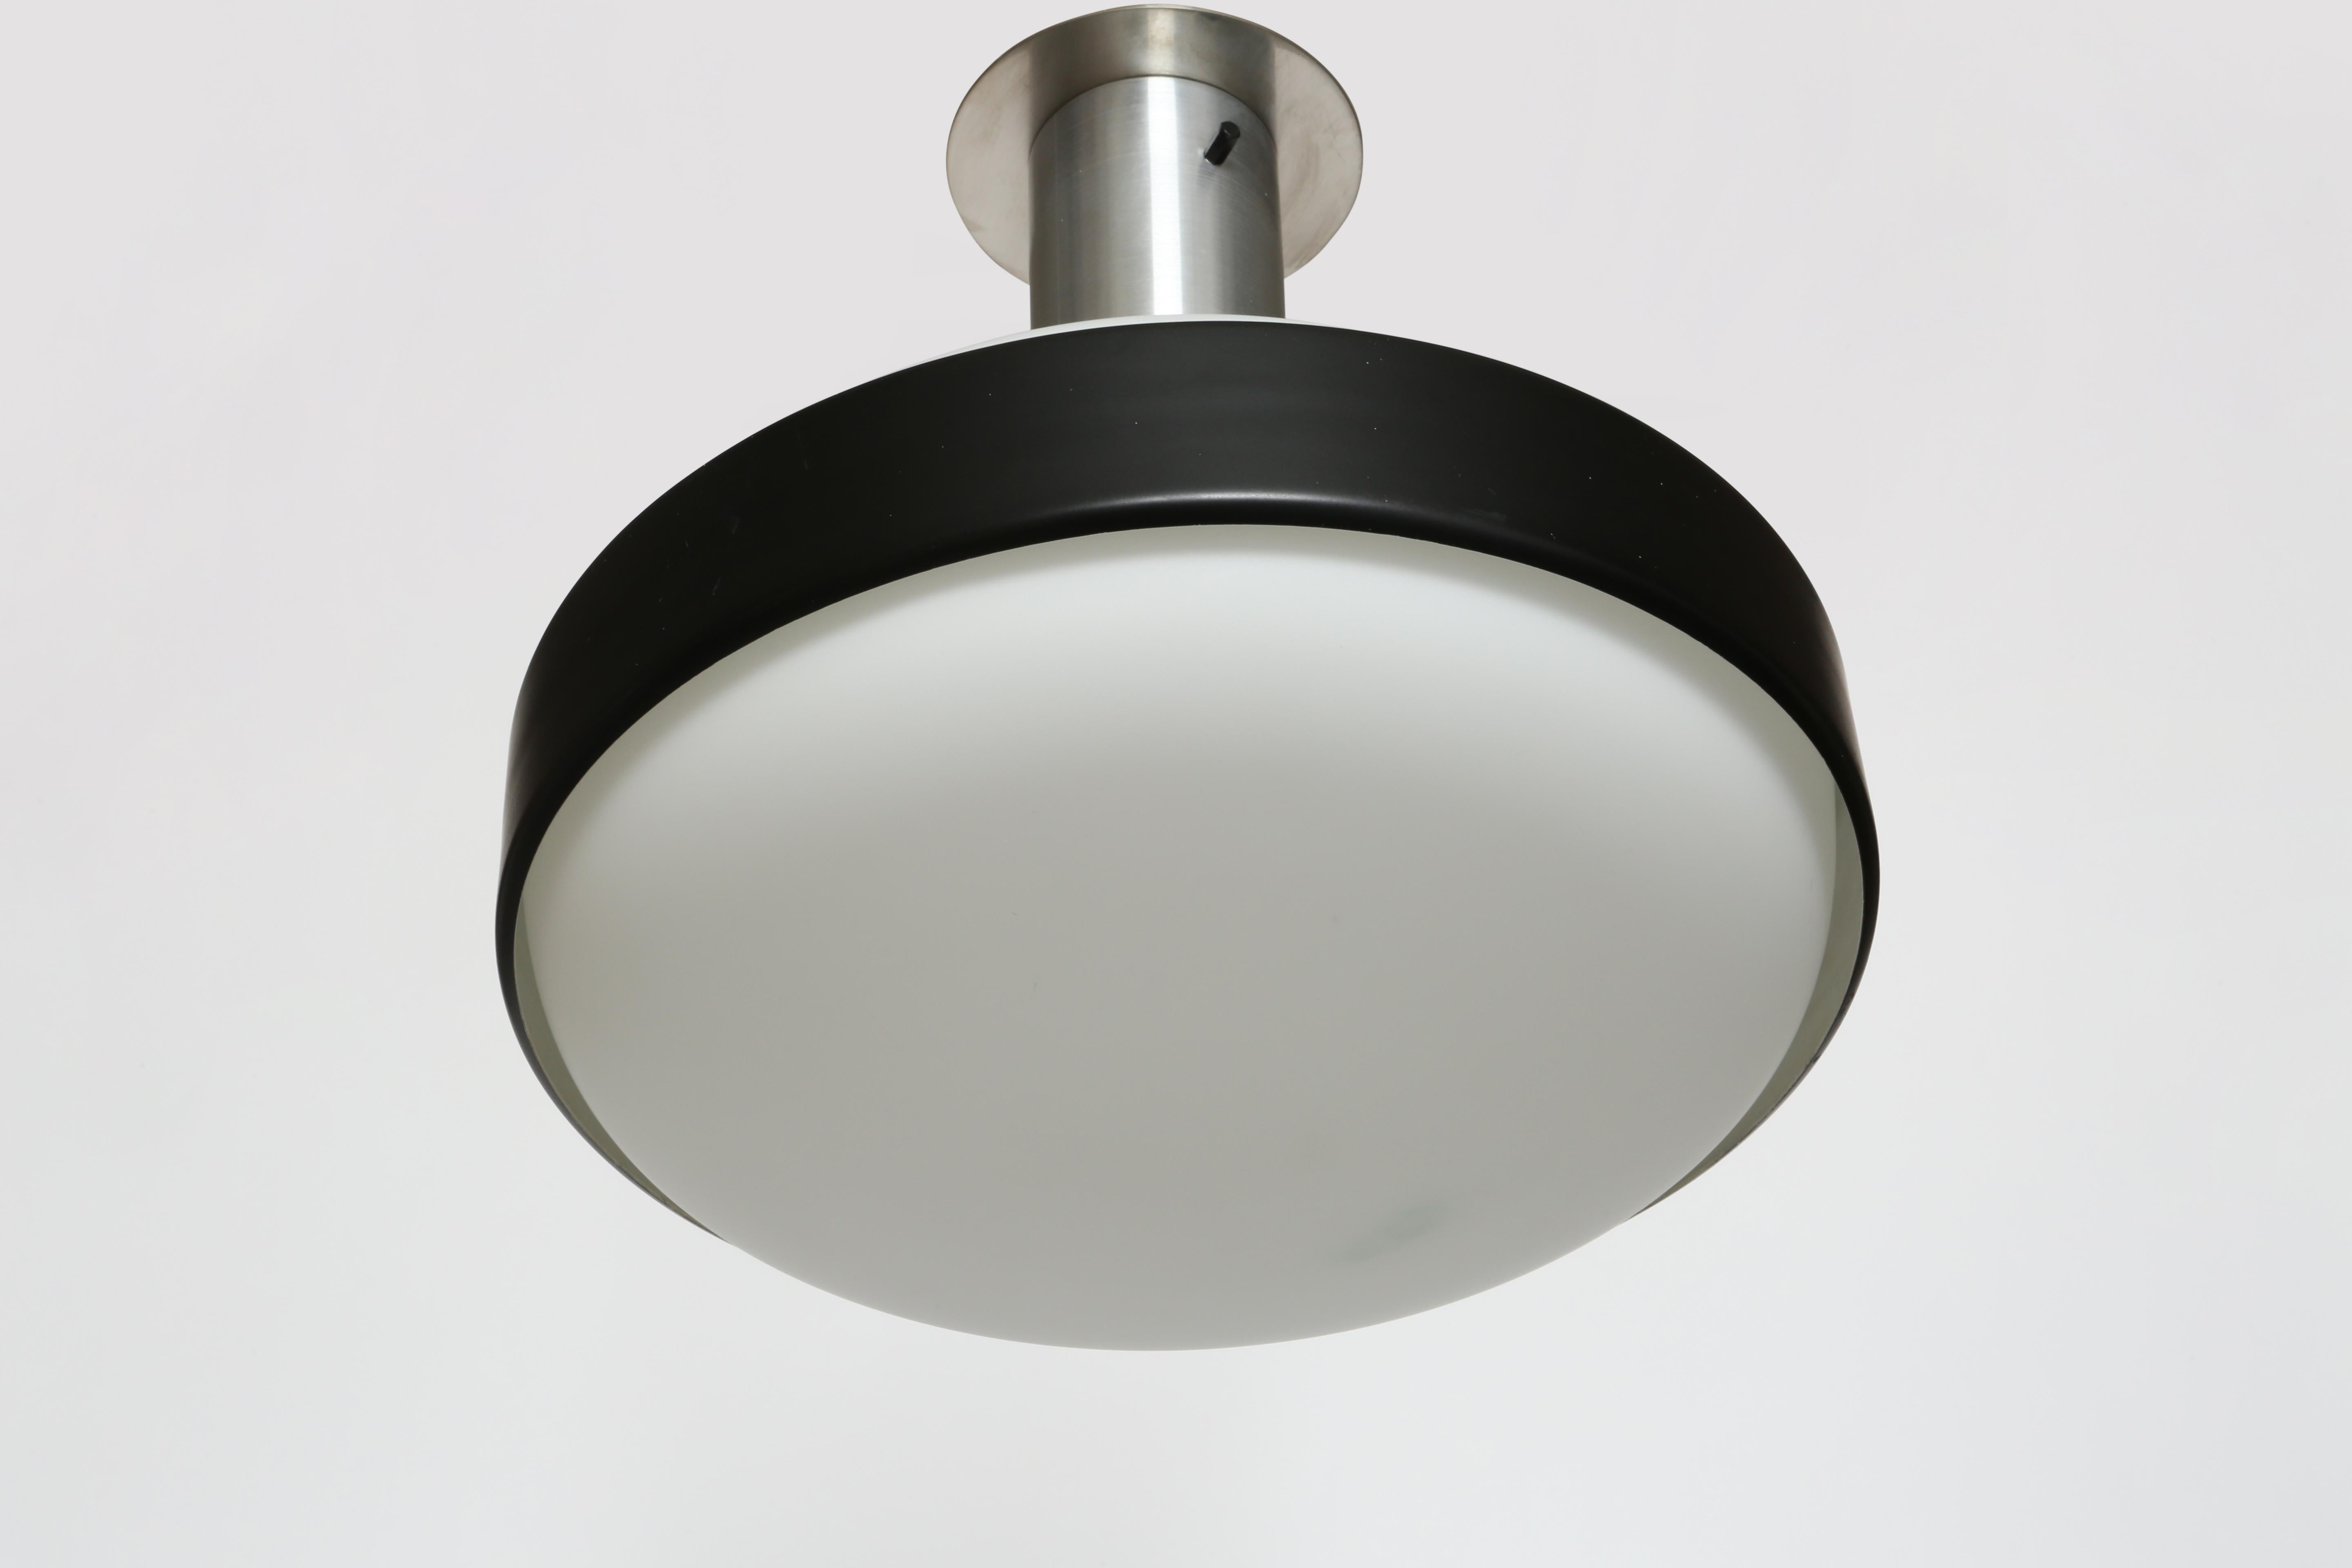 Italian Stilnovo flush mounts ceiling lights, a pair